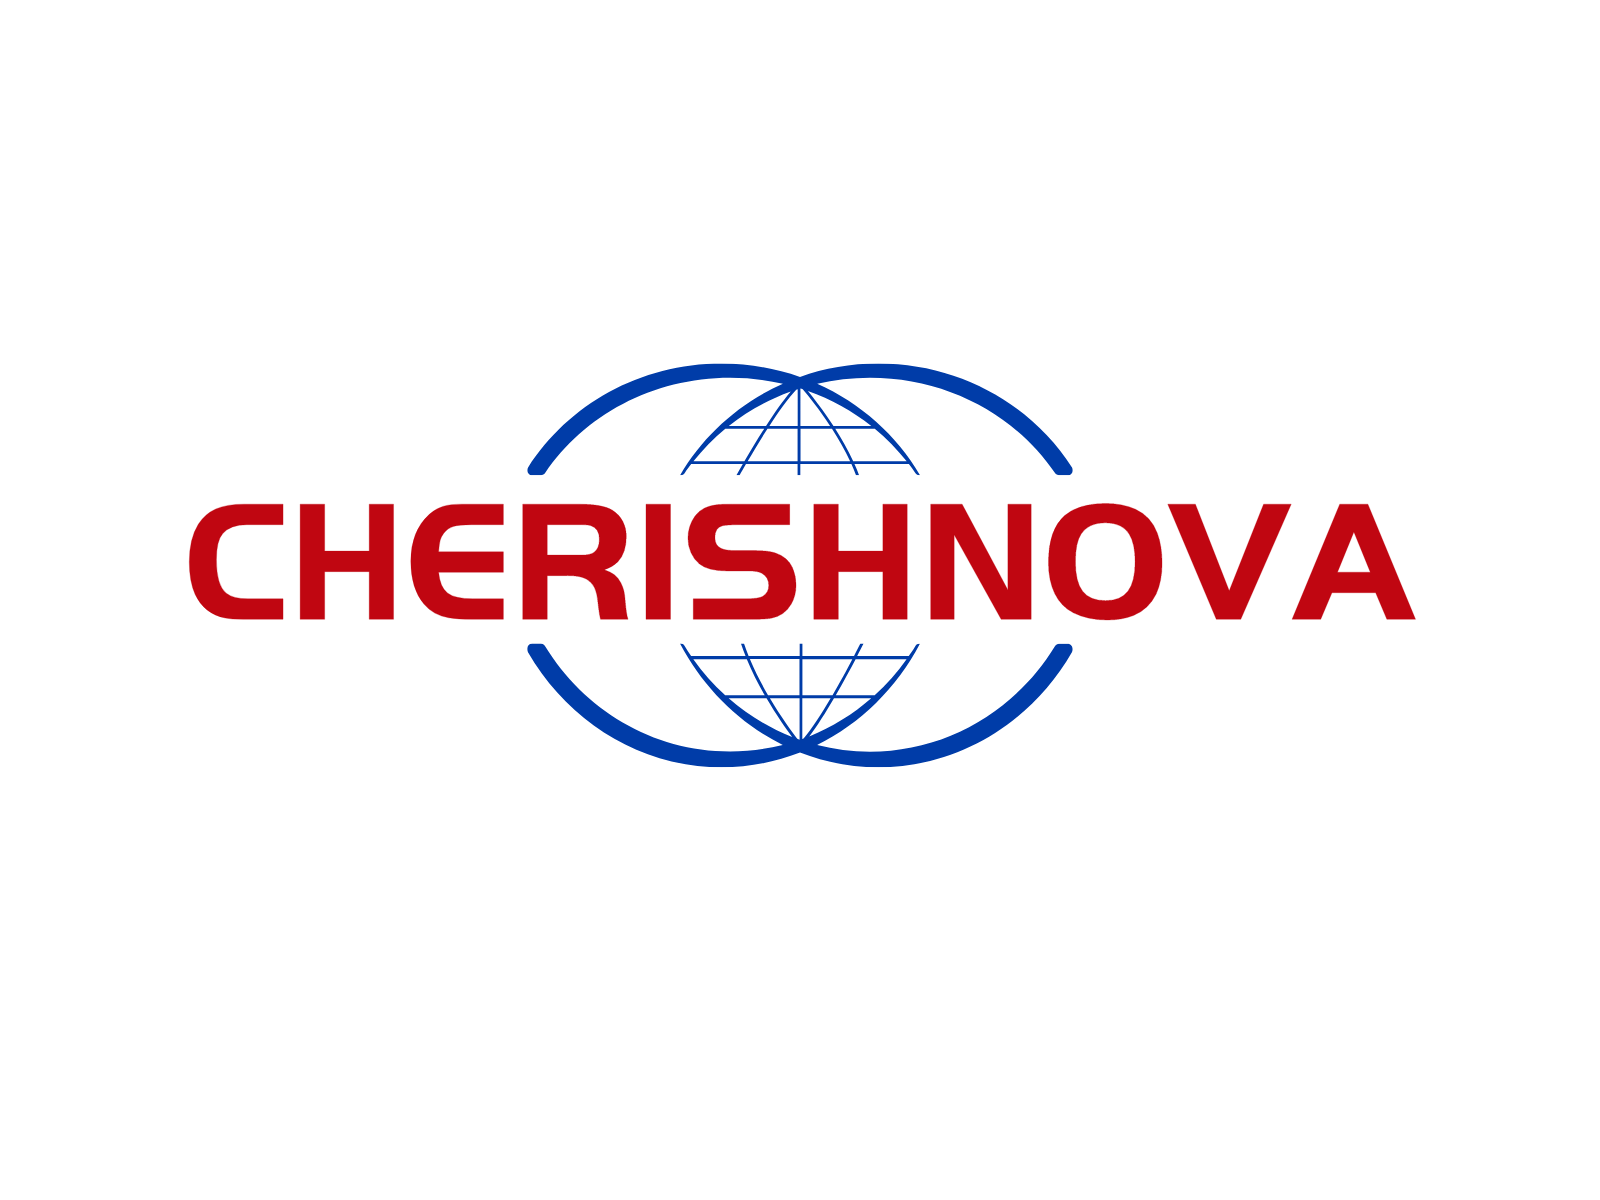 Cherishnova